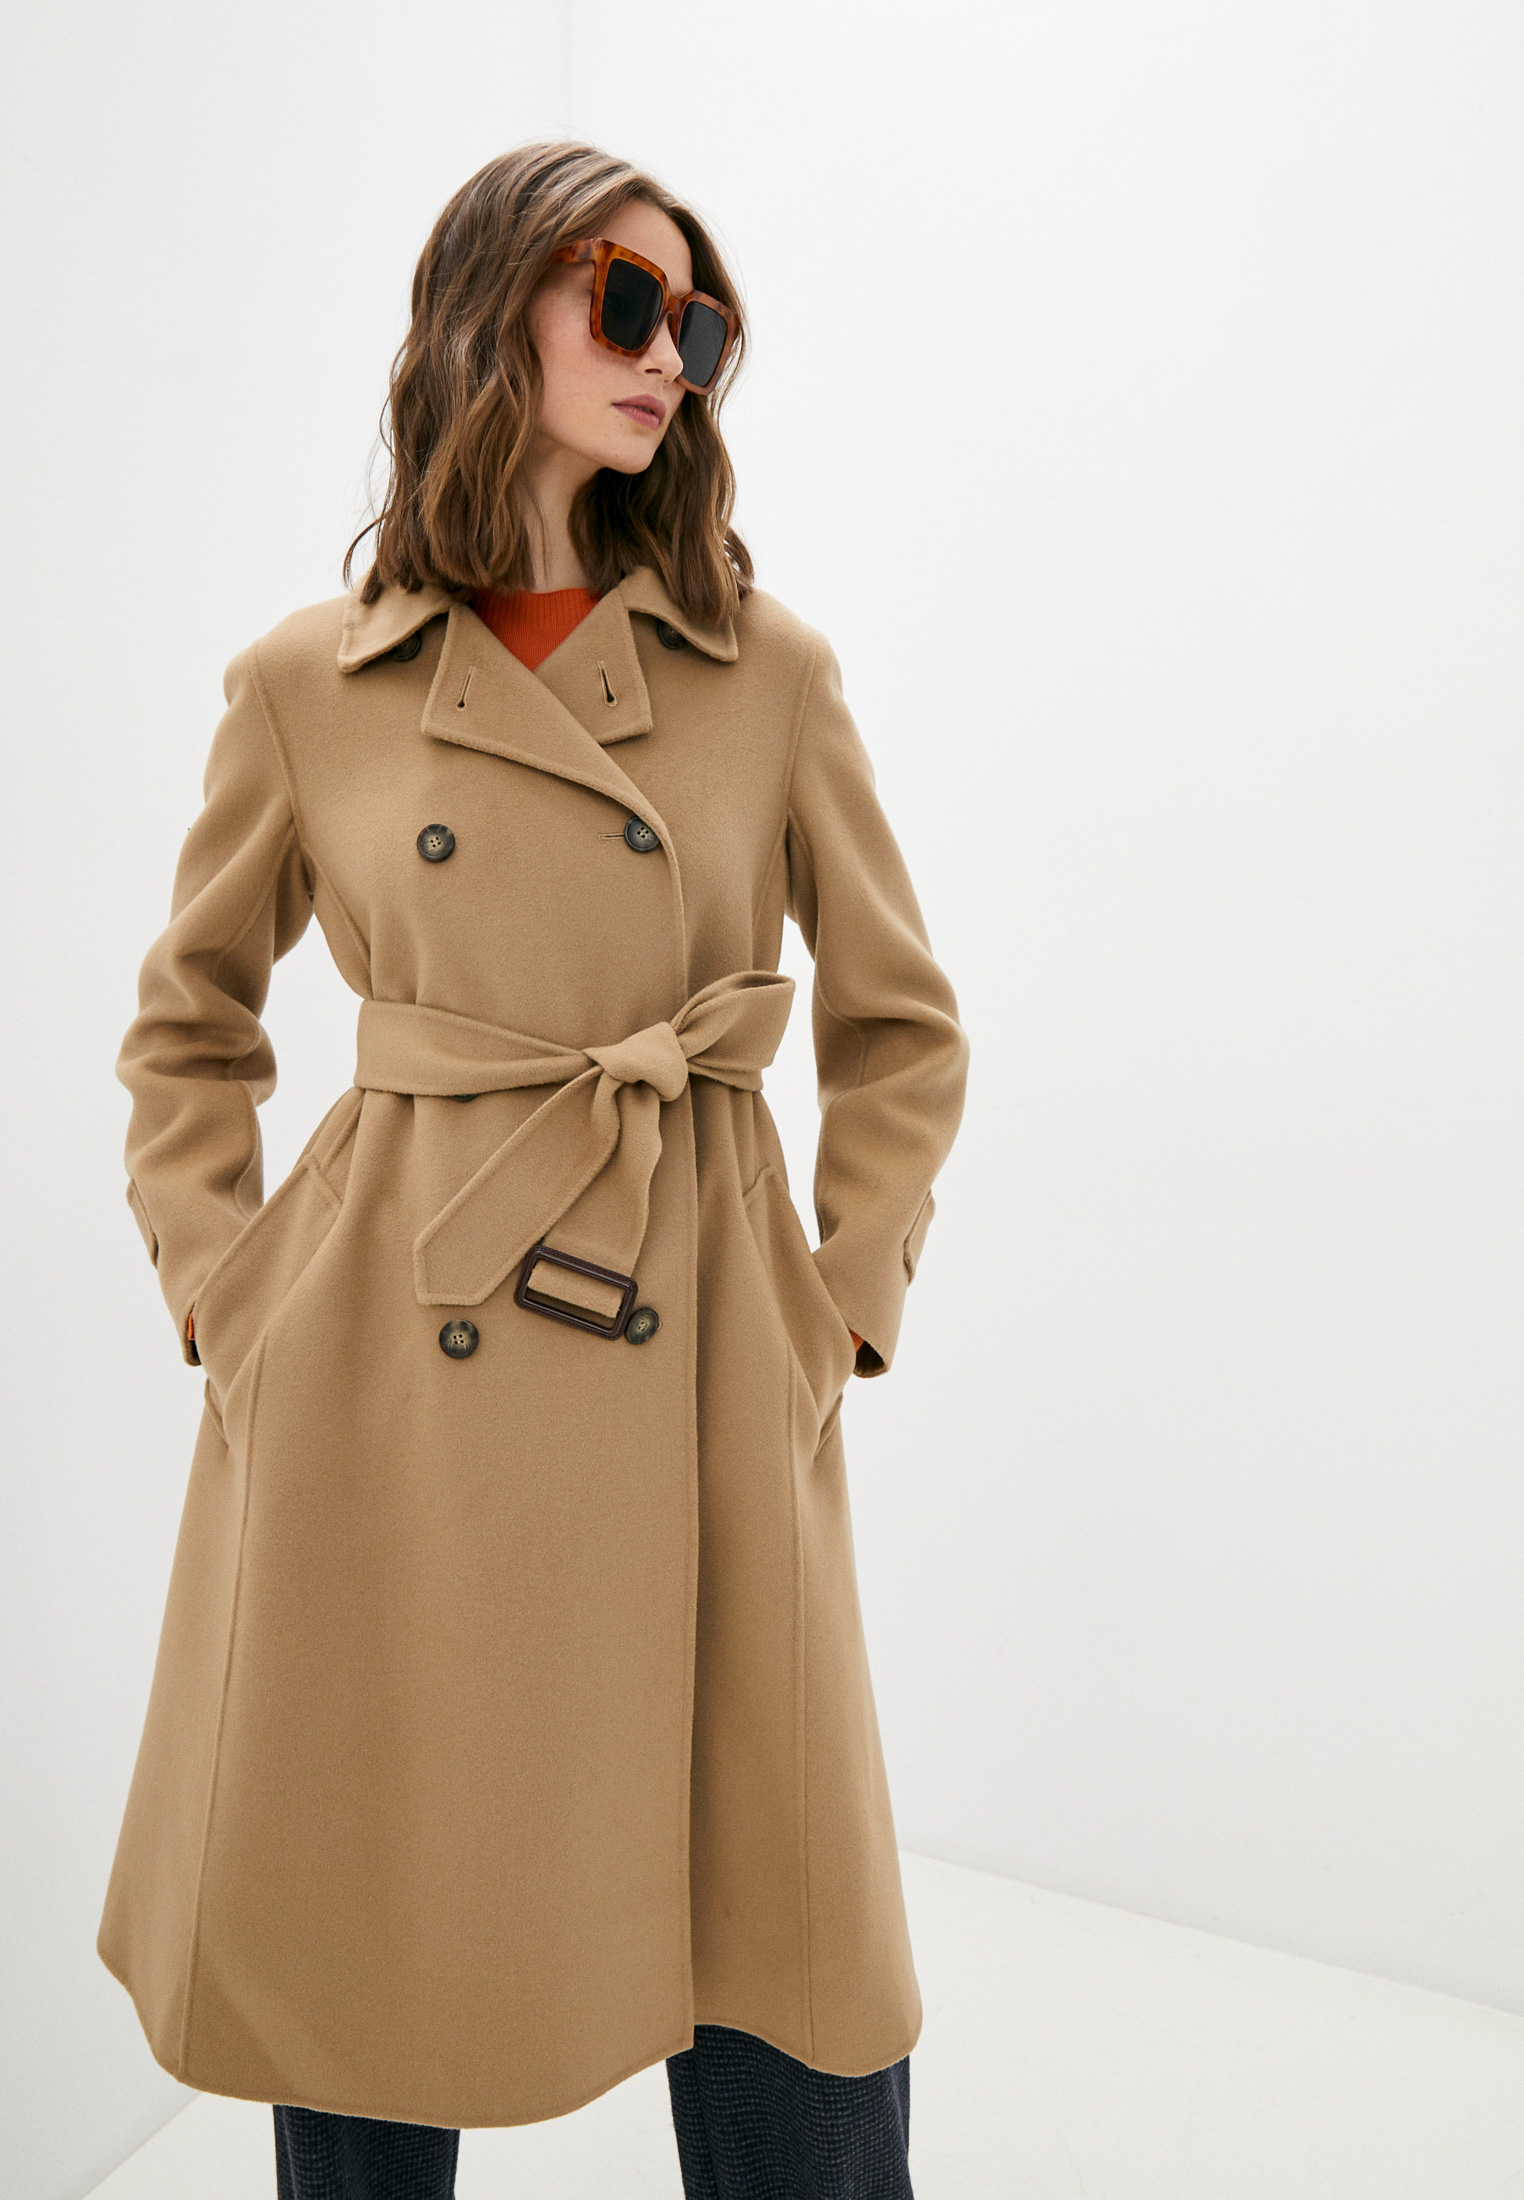 Пальто Weekend Max Mara STRUZZO, цвет: коричневый, RTLAAO112701 — купить в  интернет-магазине Lamoda